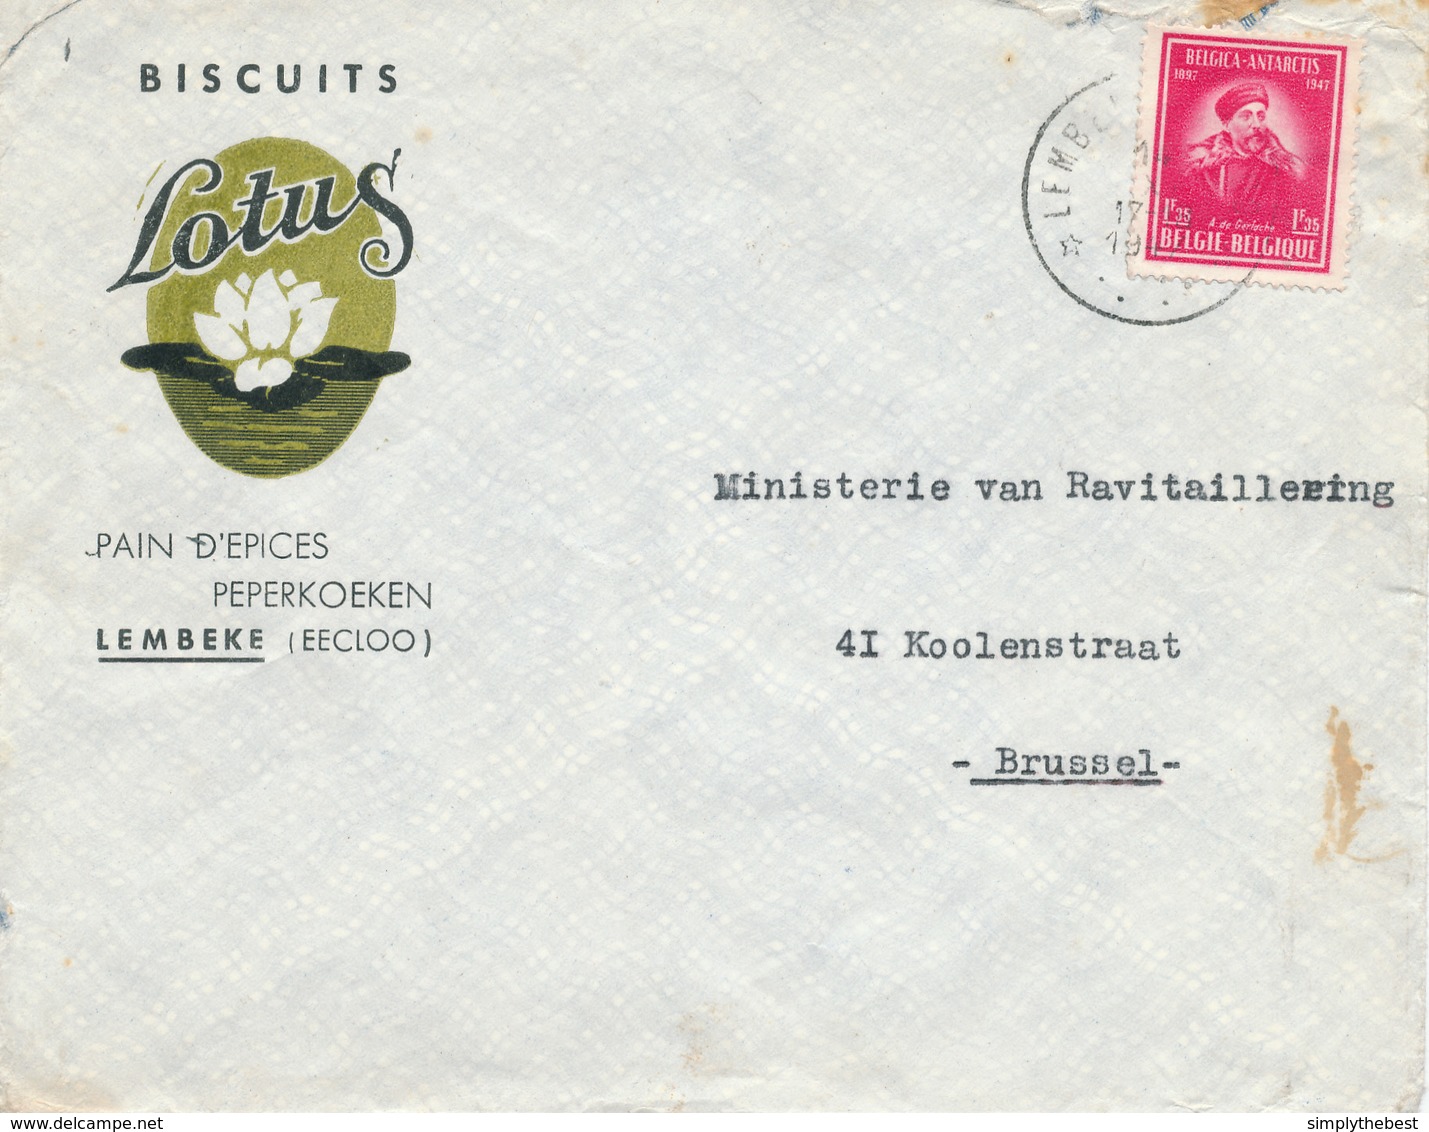 399/29 - Enveloppe TP 749 De Gerlache Cachet RELAIS à Etoiles LEMBEKE (Eecloo) 1947- Entete Biscuits Pains Epices Lotus - Sterstempels